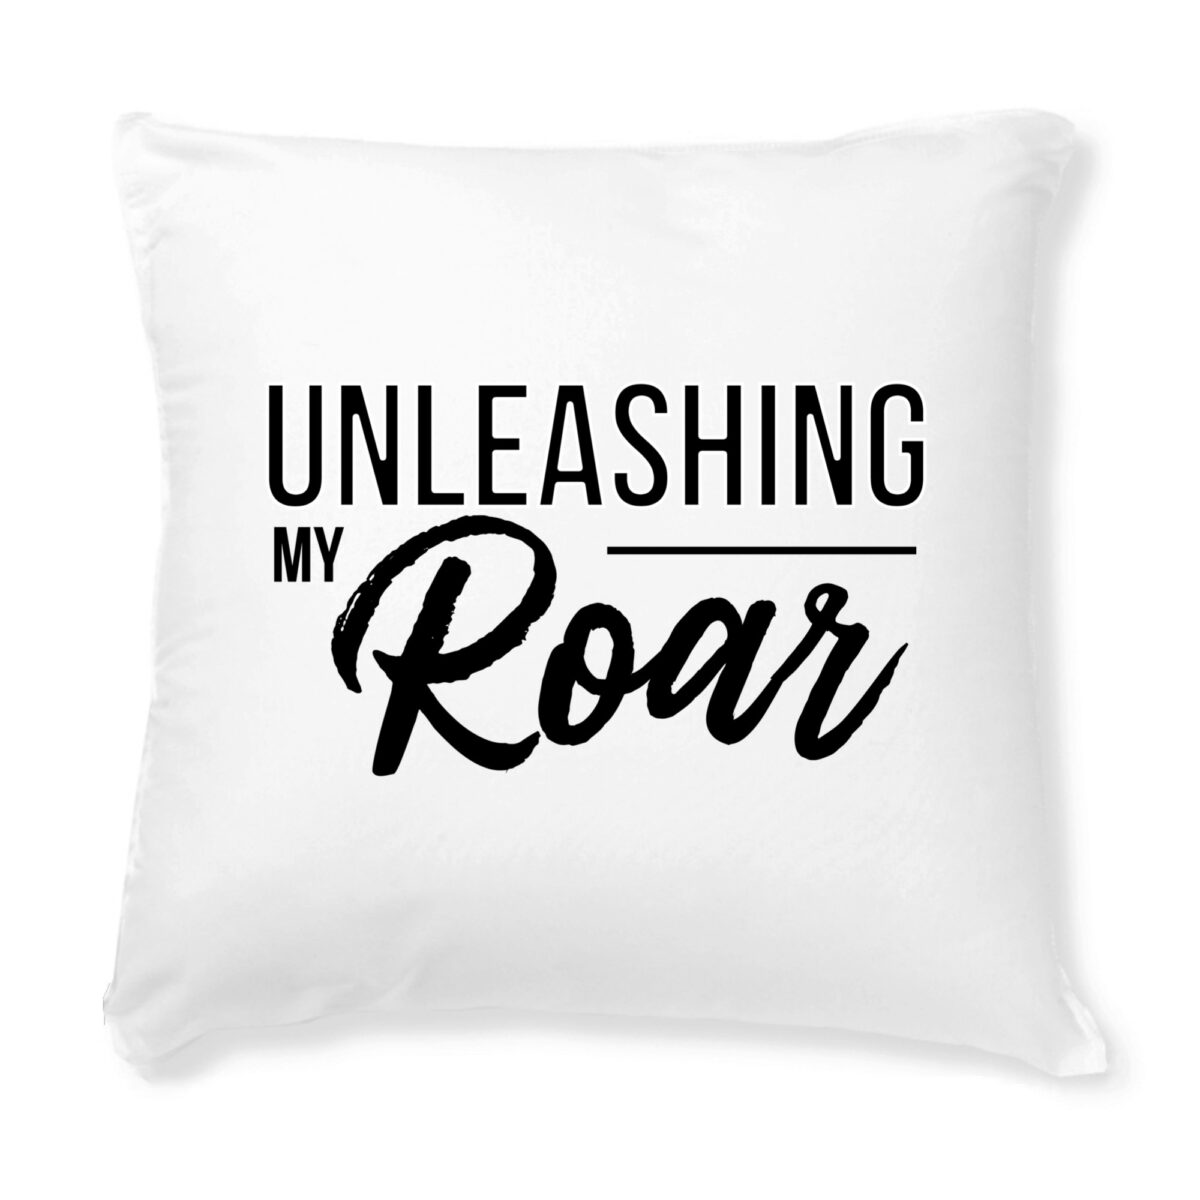 Unleashing my Roar cushion